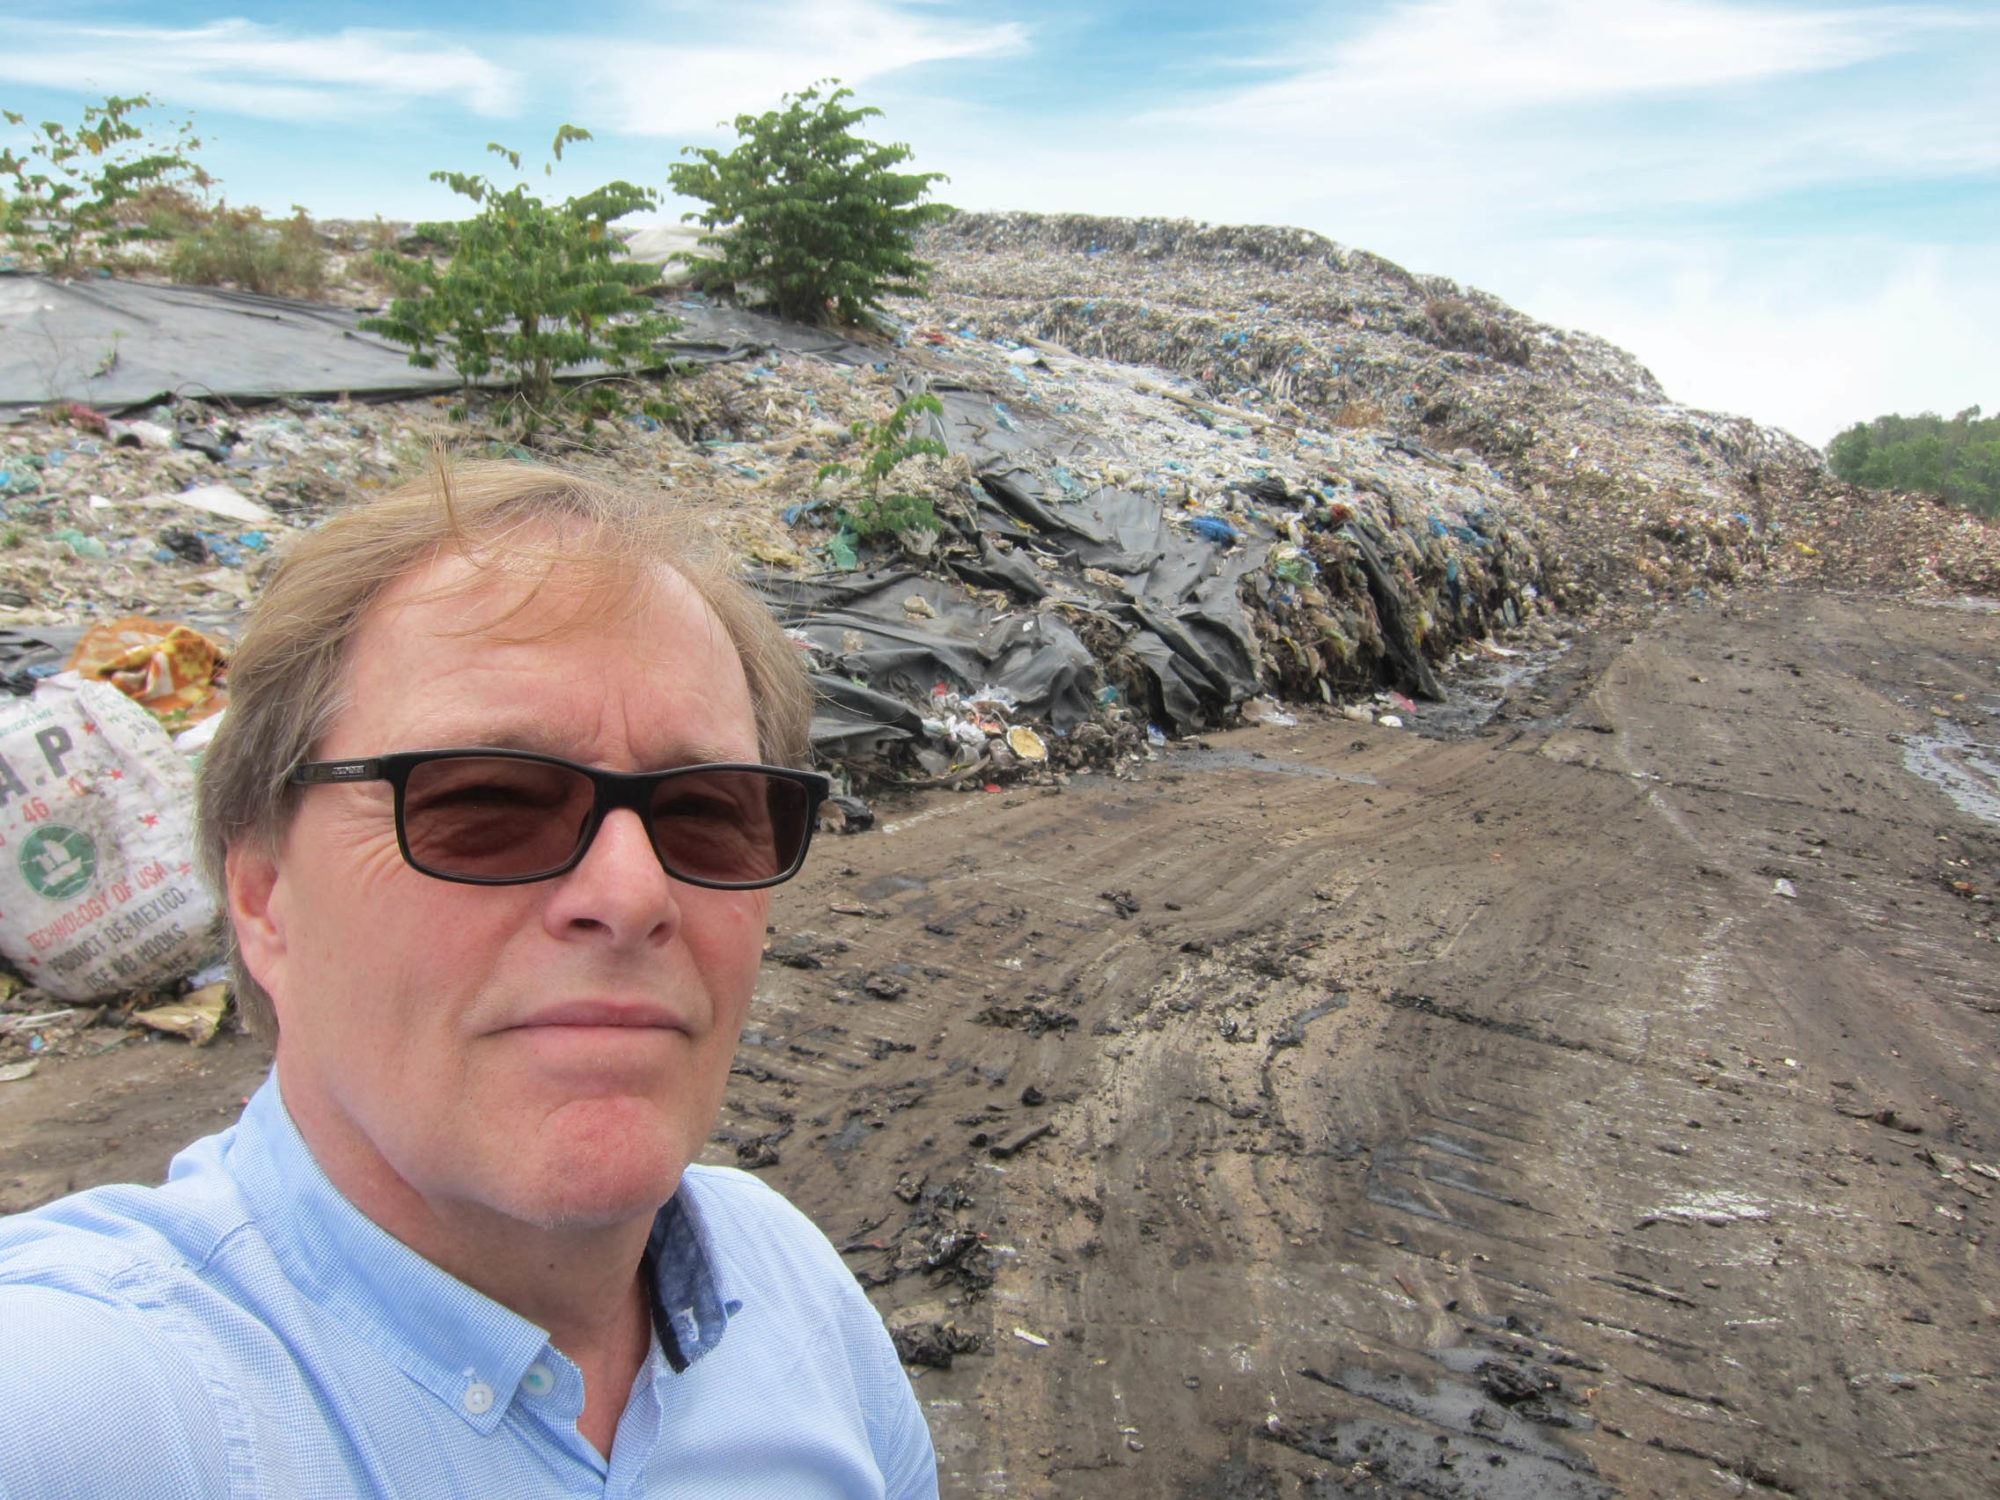 Kåre Helge Karstensen of SINTE in front of a garbage pile inVietnam.